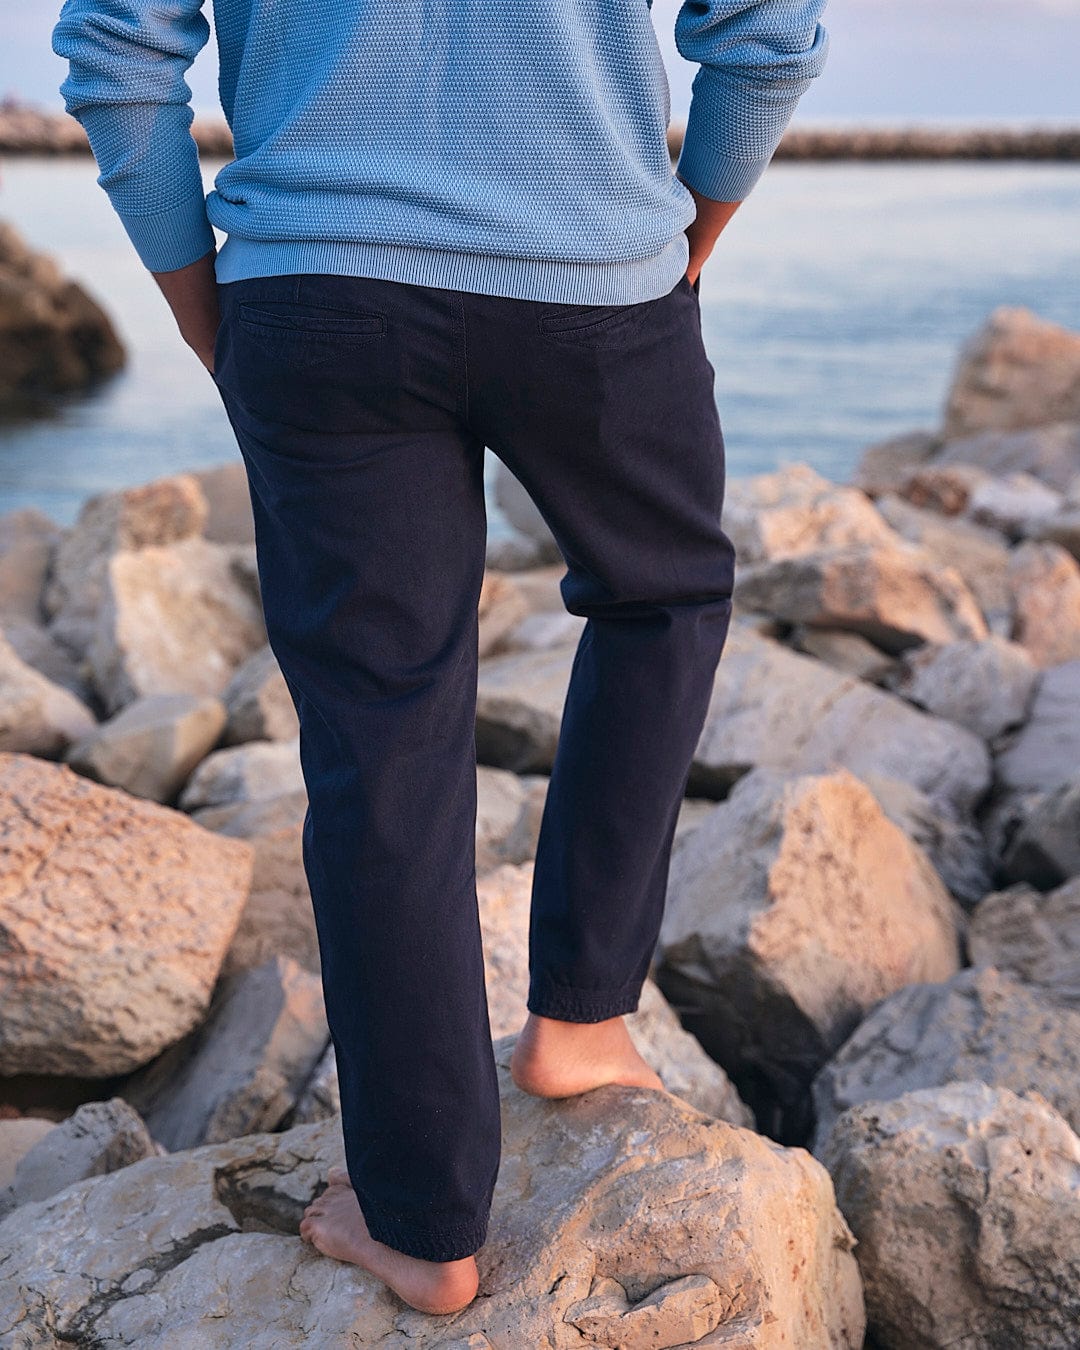 A man wearing Saltrock Meddon - Mens Twill Trouser - Navy cuffed trousers standing on rocks near the ocean.